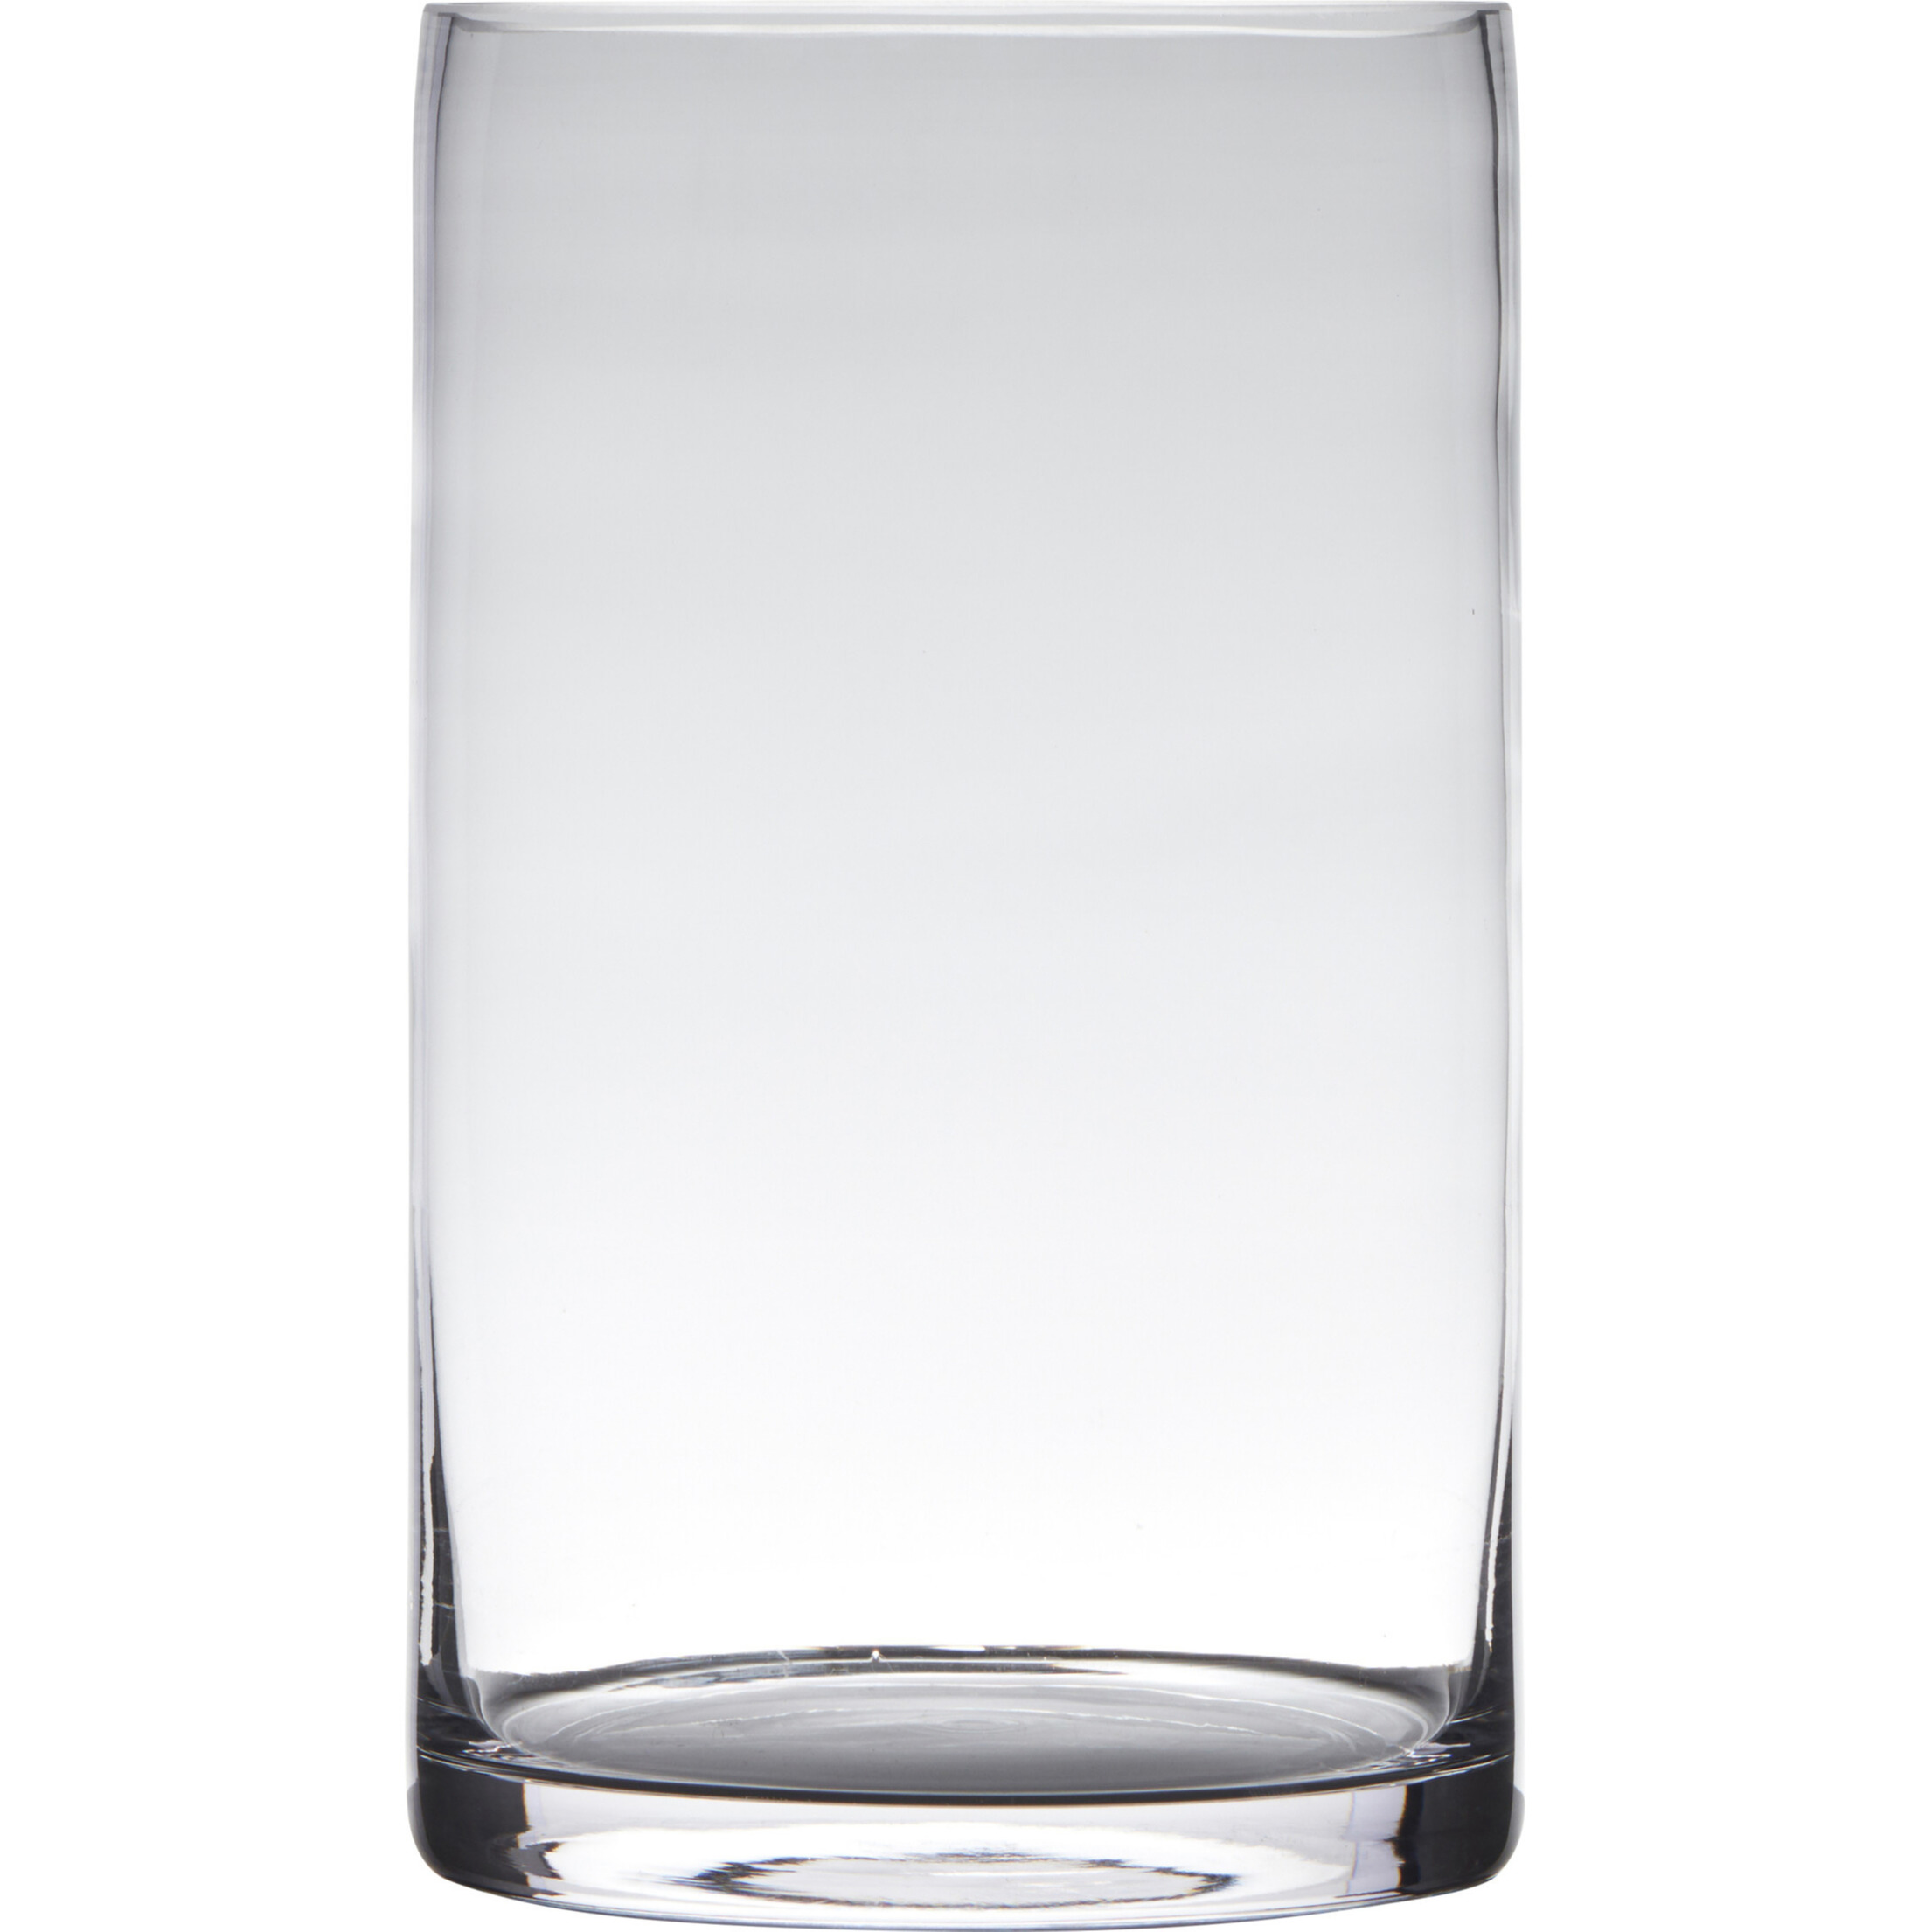 Hakbijl Glass Transparante home-basics cilinder vorm vaas/vazen van glas 25 x 15 cm -